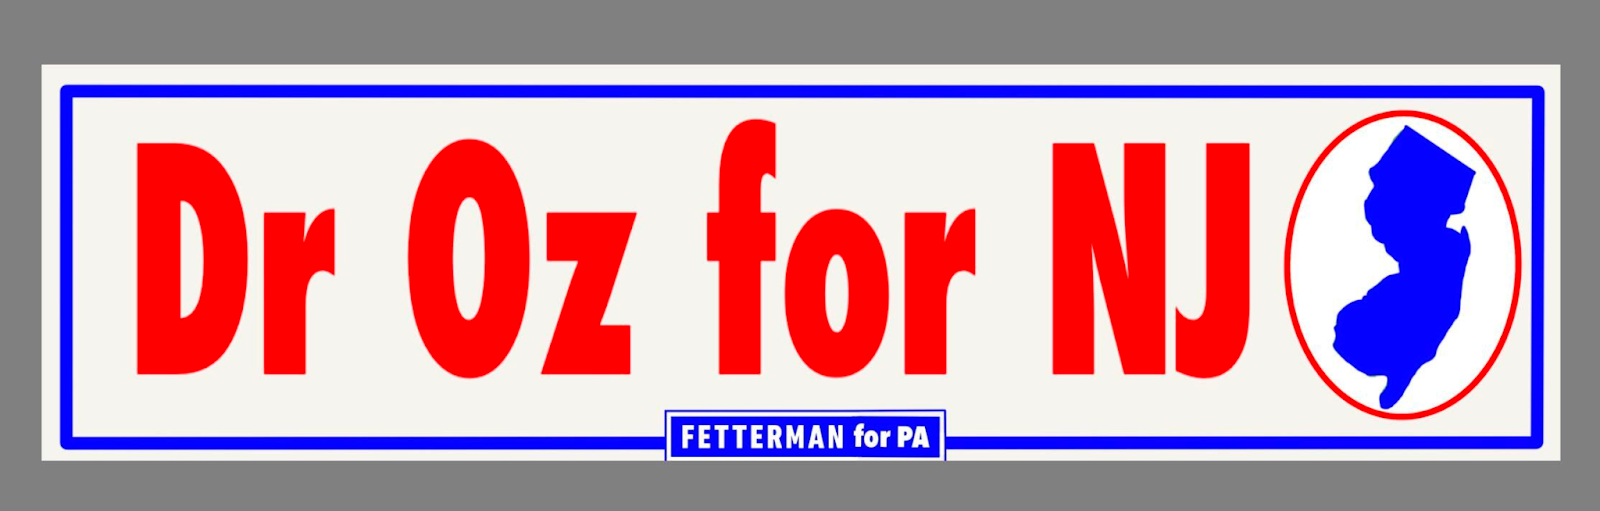 Dr. Oz for NJ bumper sticker